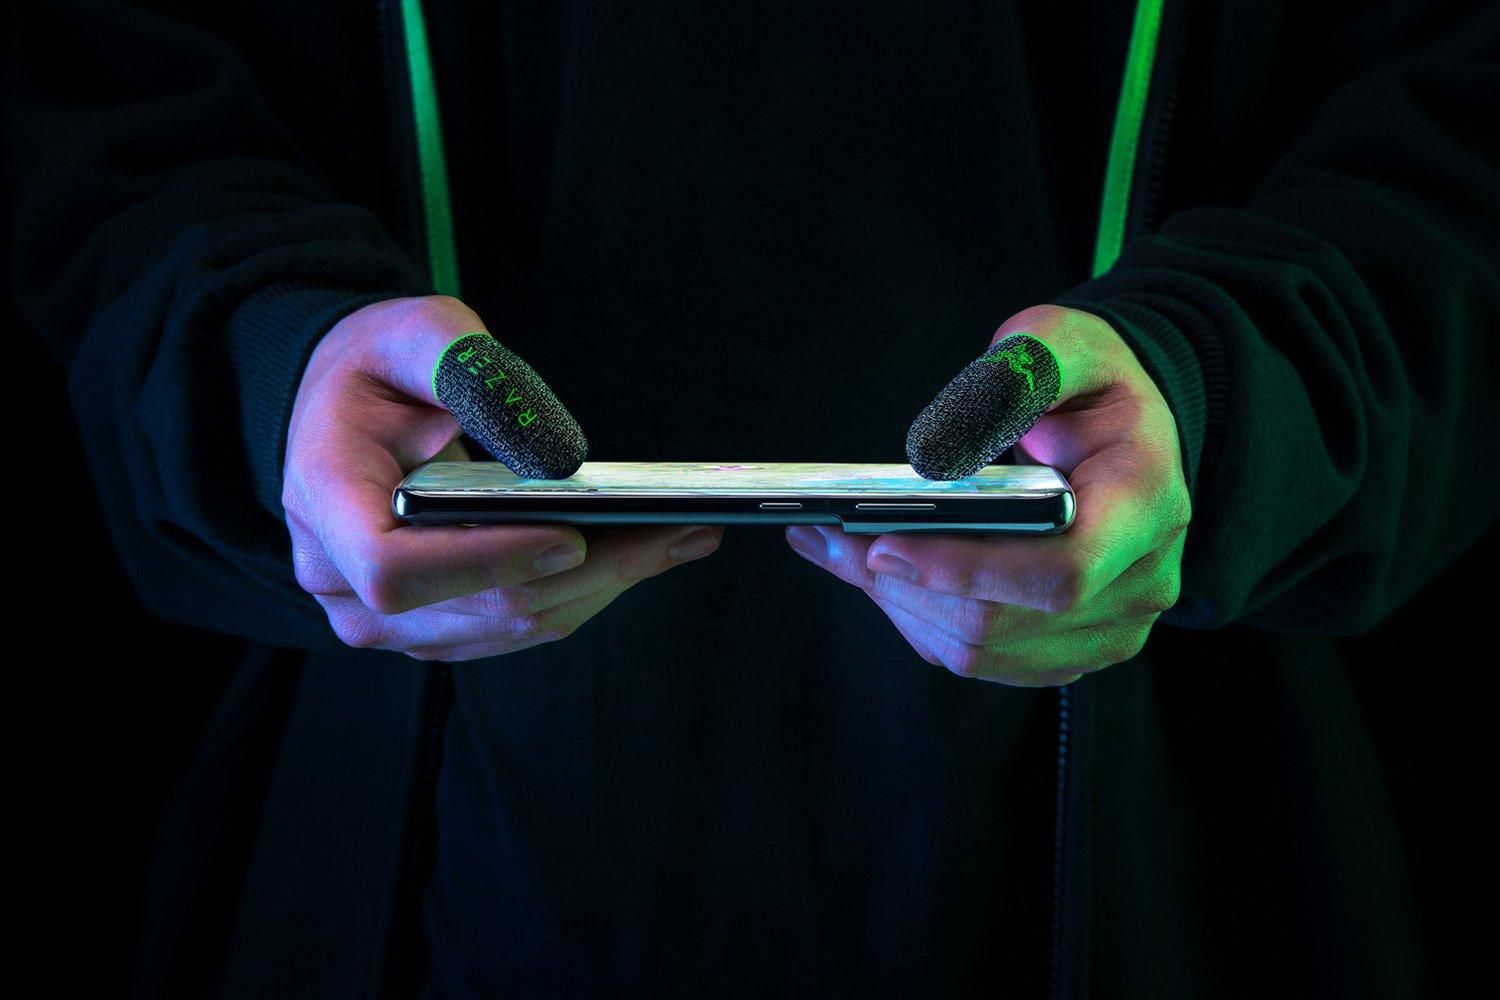 Razer випустила ігрові напальчники для шанувальників мобільних ігор - Новини технологій - Техно